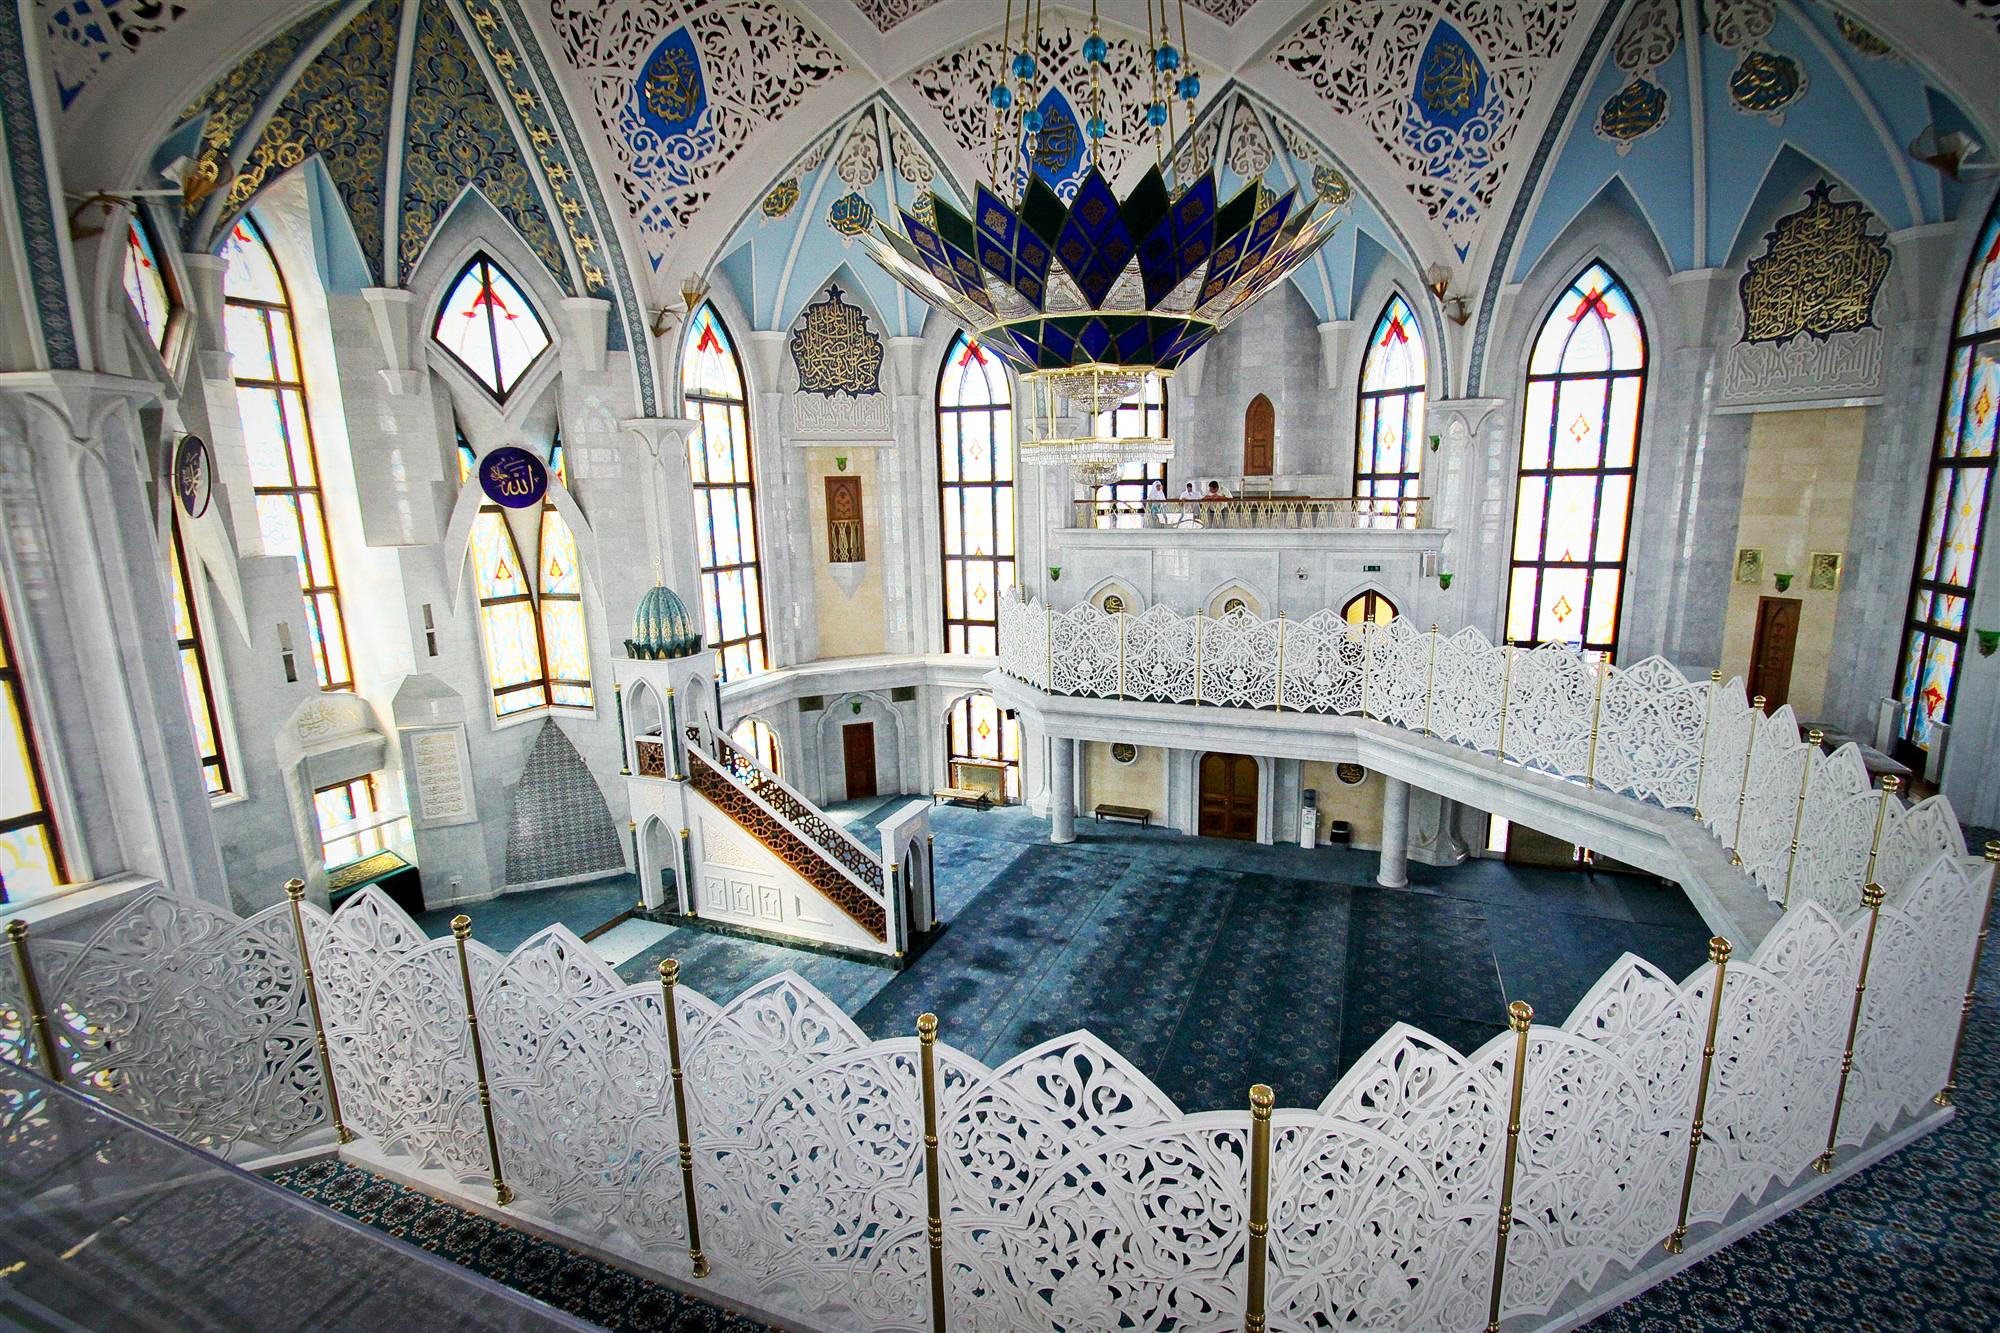 Мечеть Кул Шариф Внутри Фото